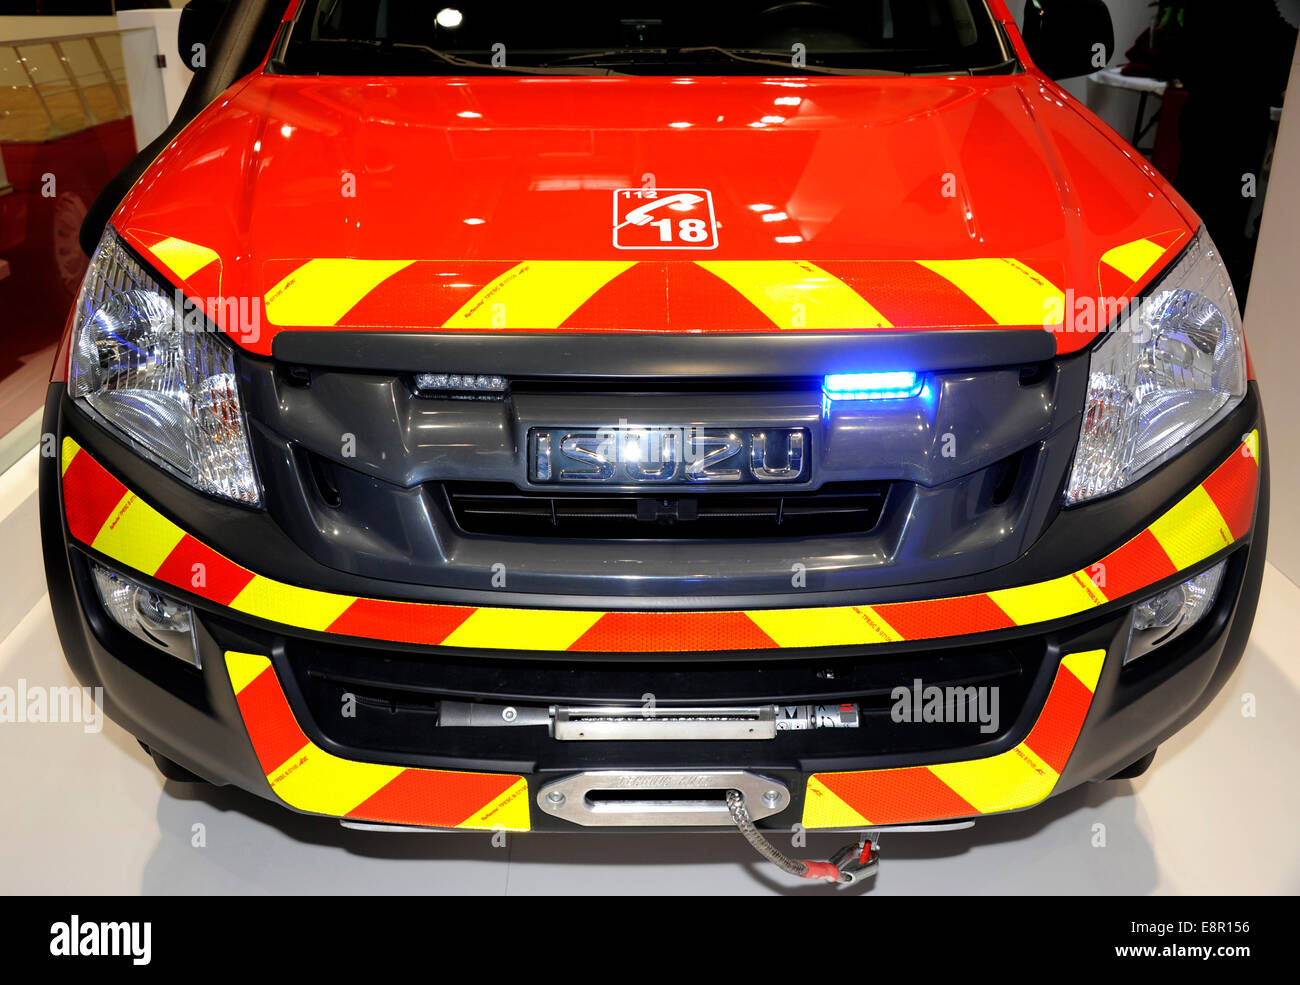 Isuzu,Fire truck,Paris Motor Show,France Stock Photo